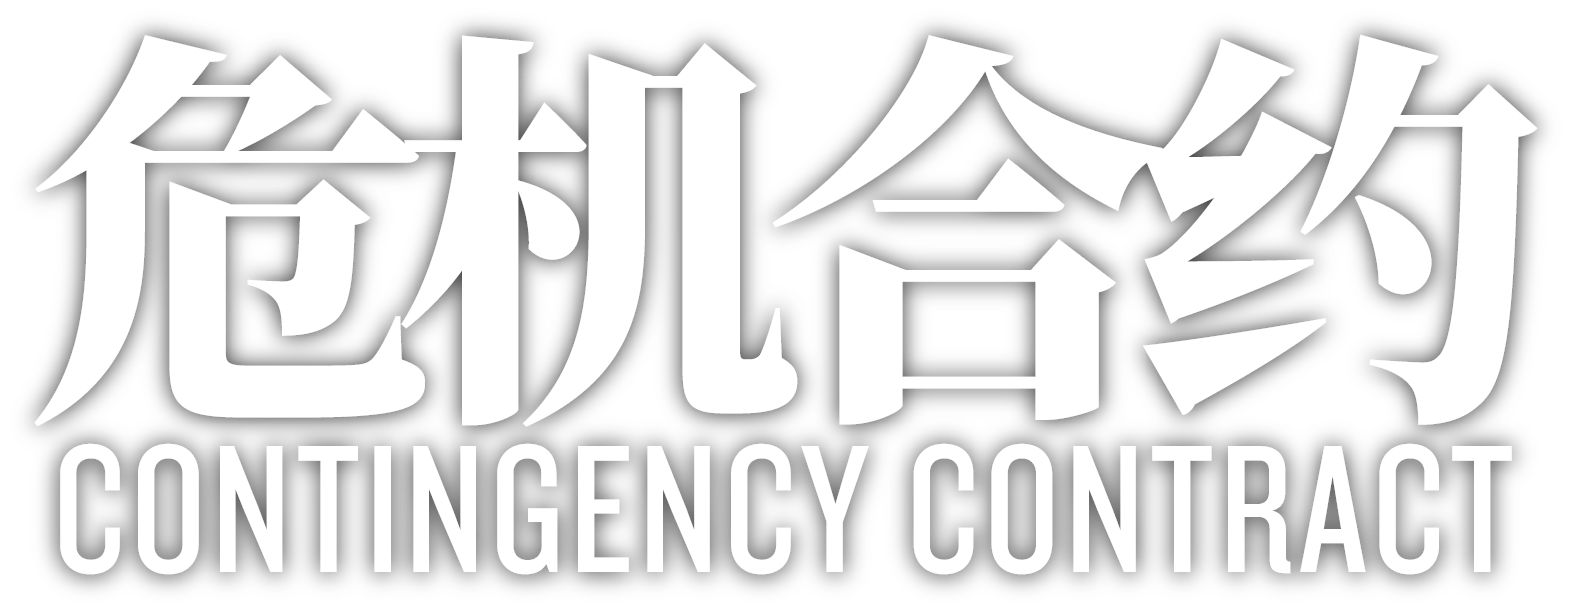 明日方舟 危机合约 logo.png